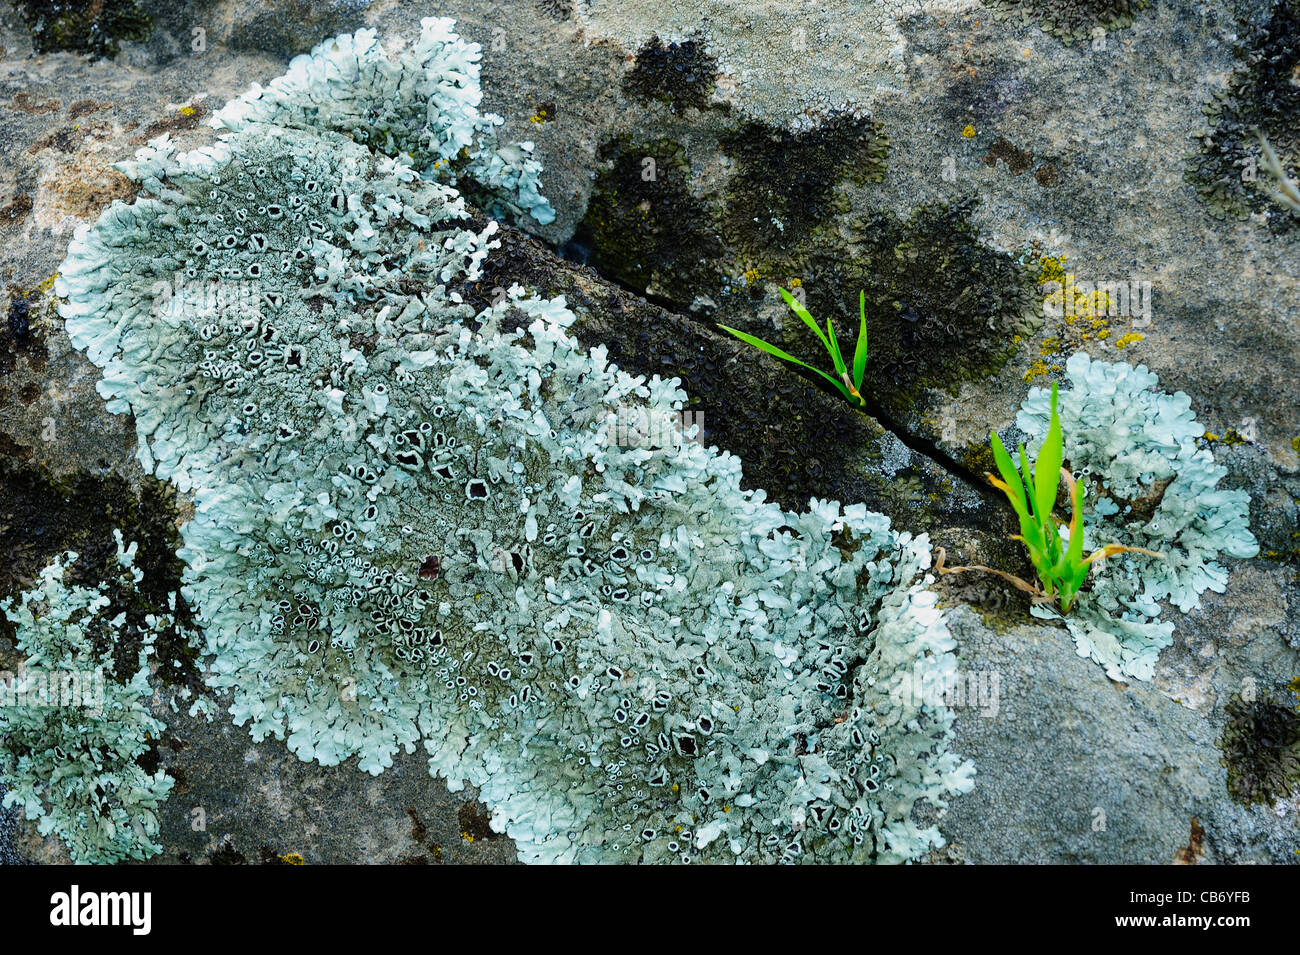 Common Greenshield lichen (Flavoparmelia caperata) growing on rock. Andalucia, Spain. Stock Photo